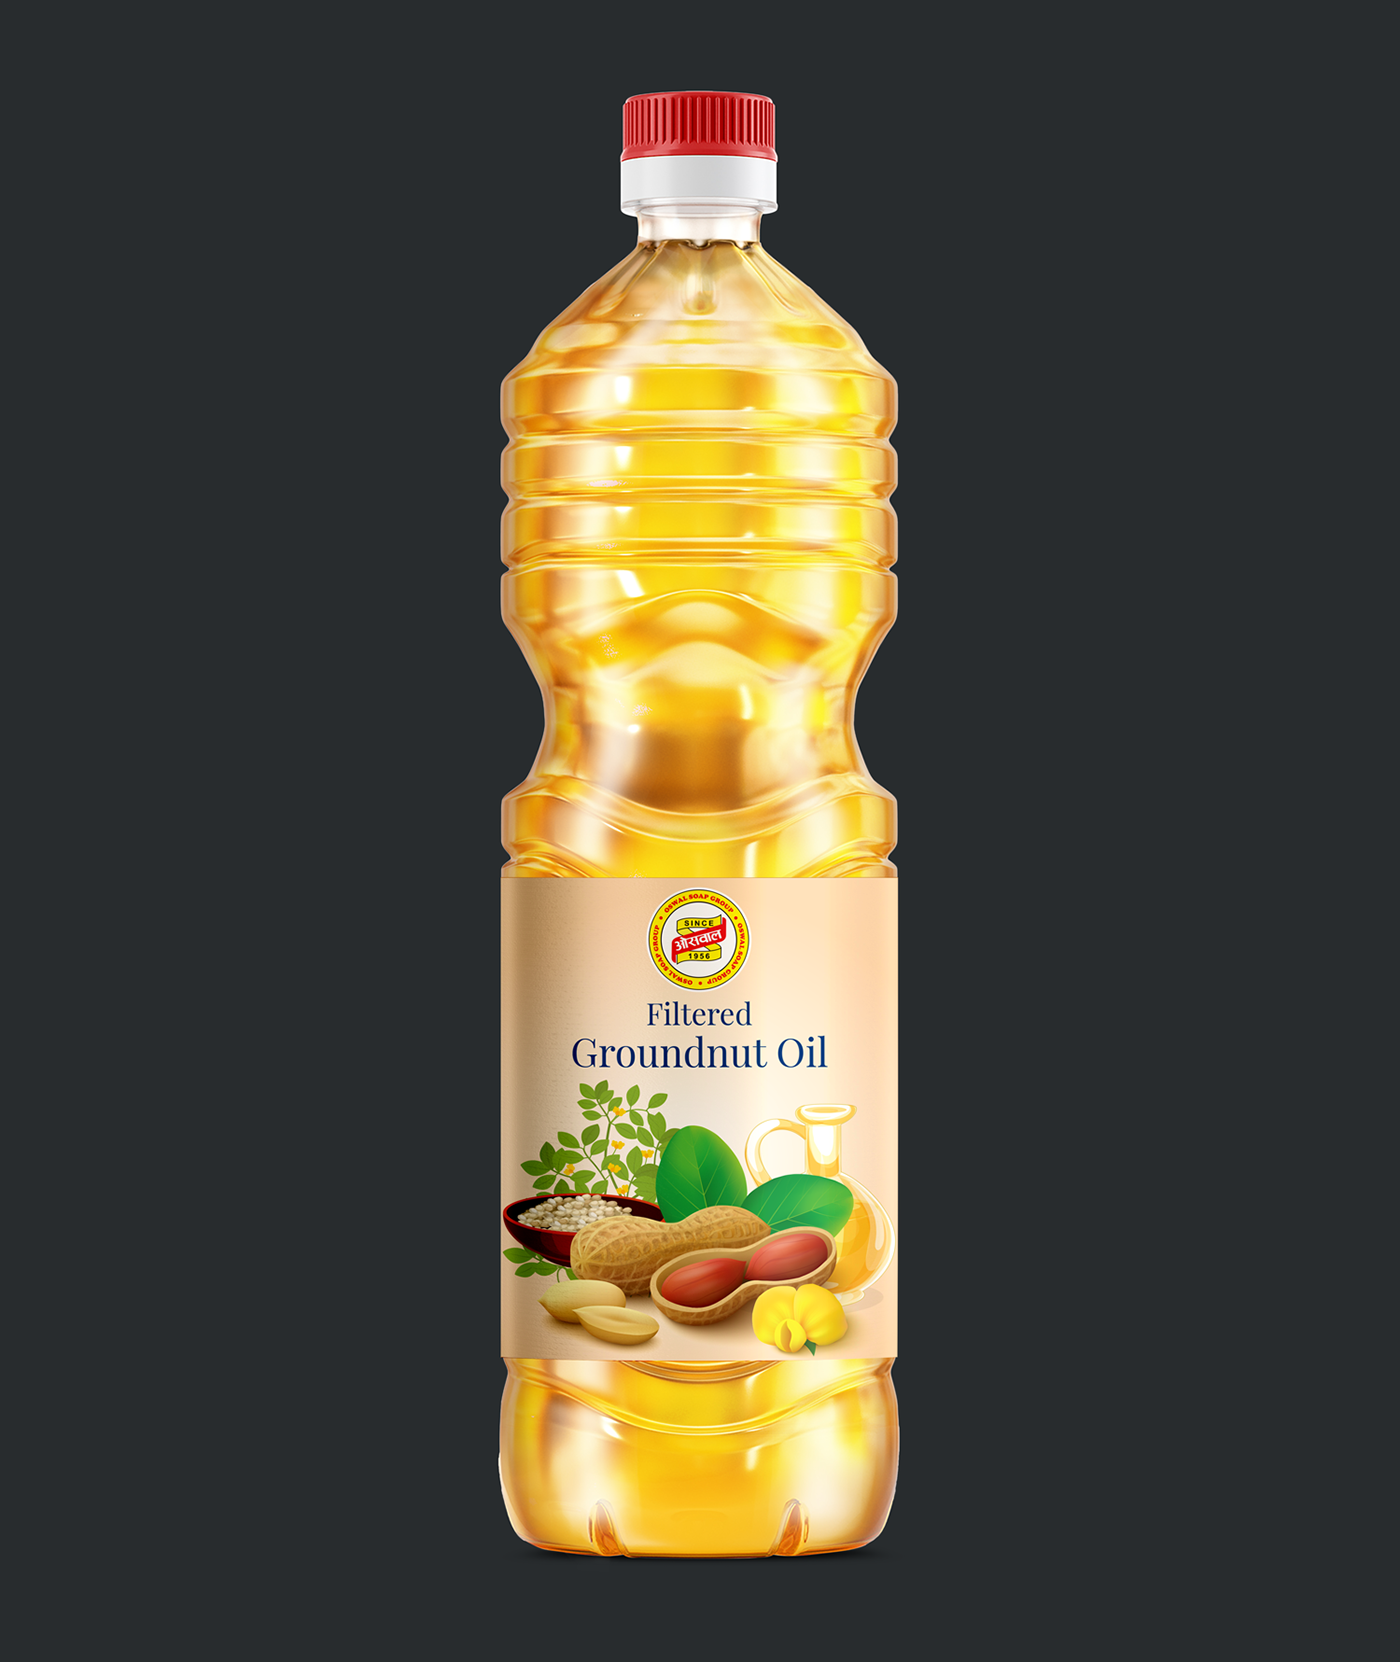 1 Litre Groundnut Oil Bottle Packaging/Product Design